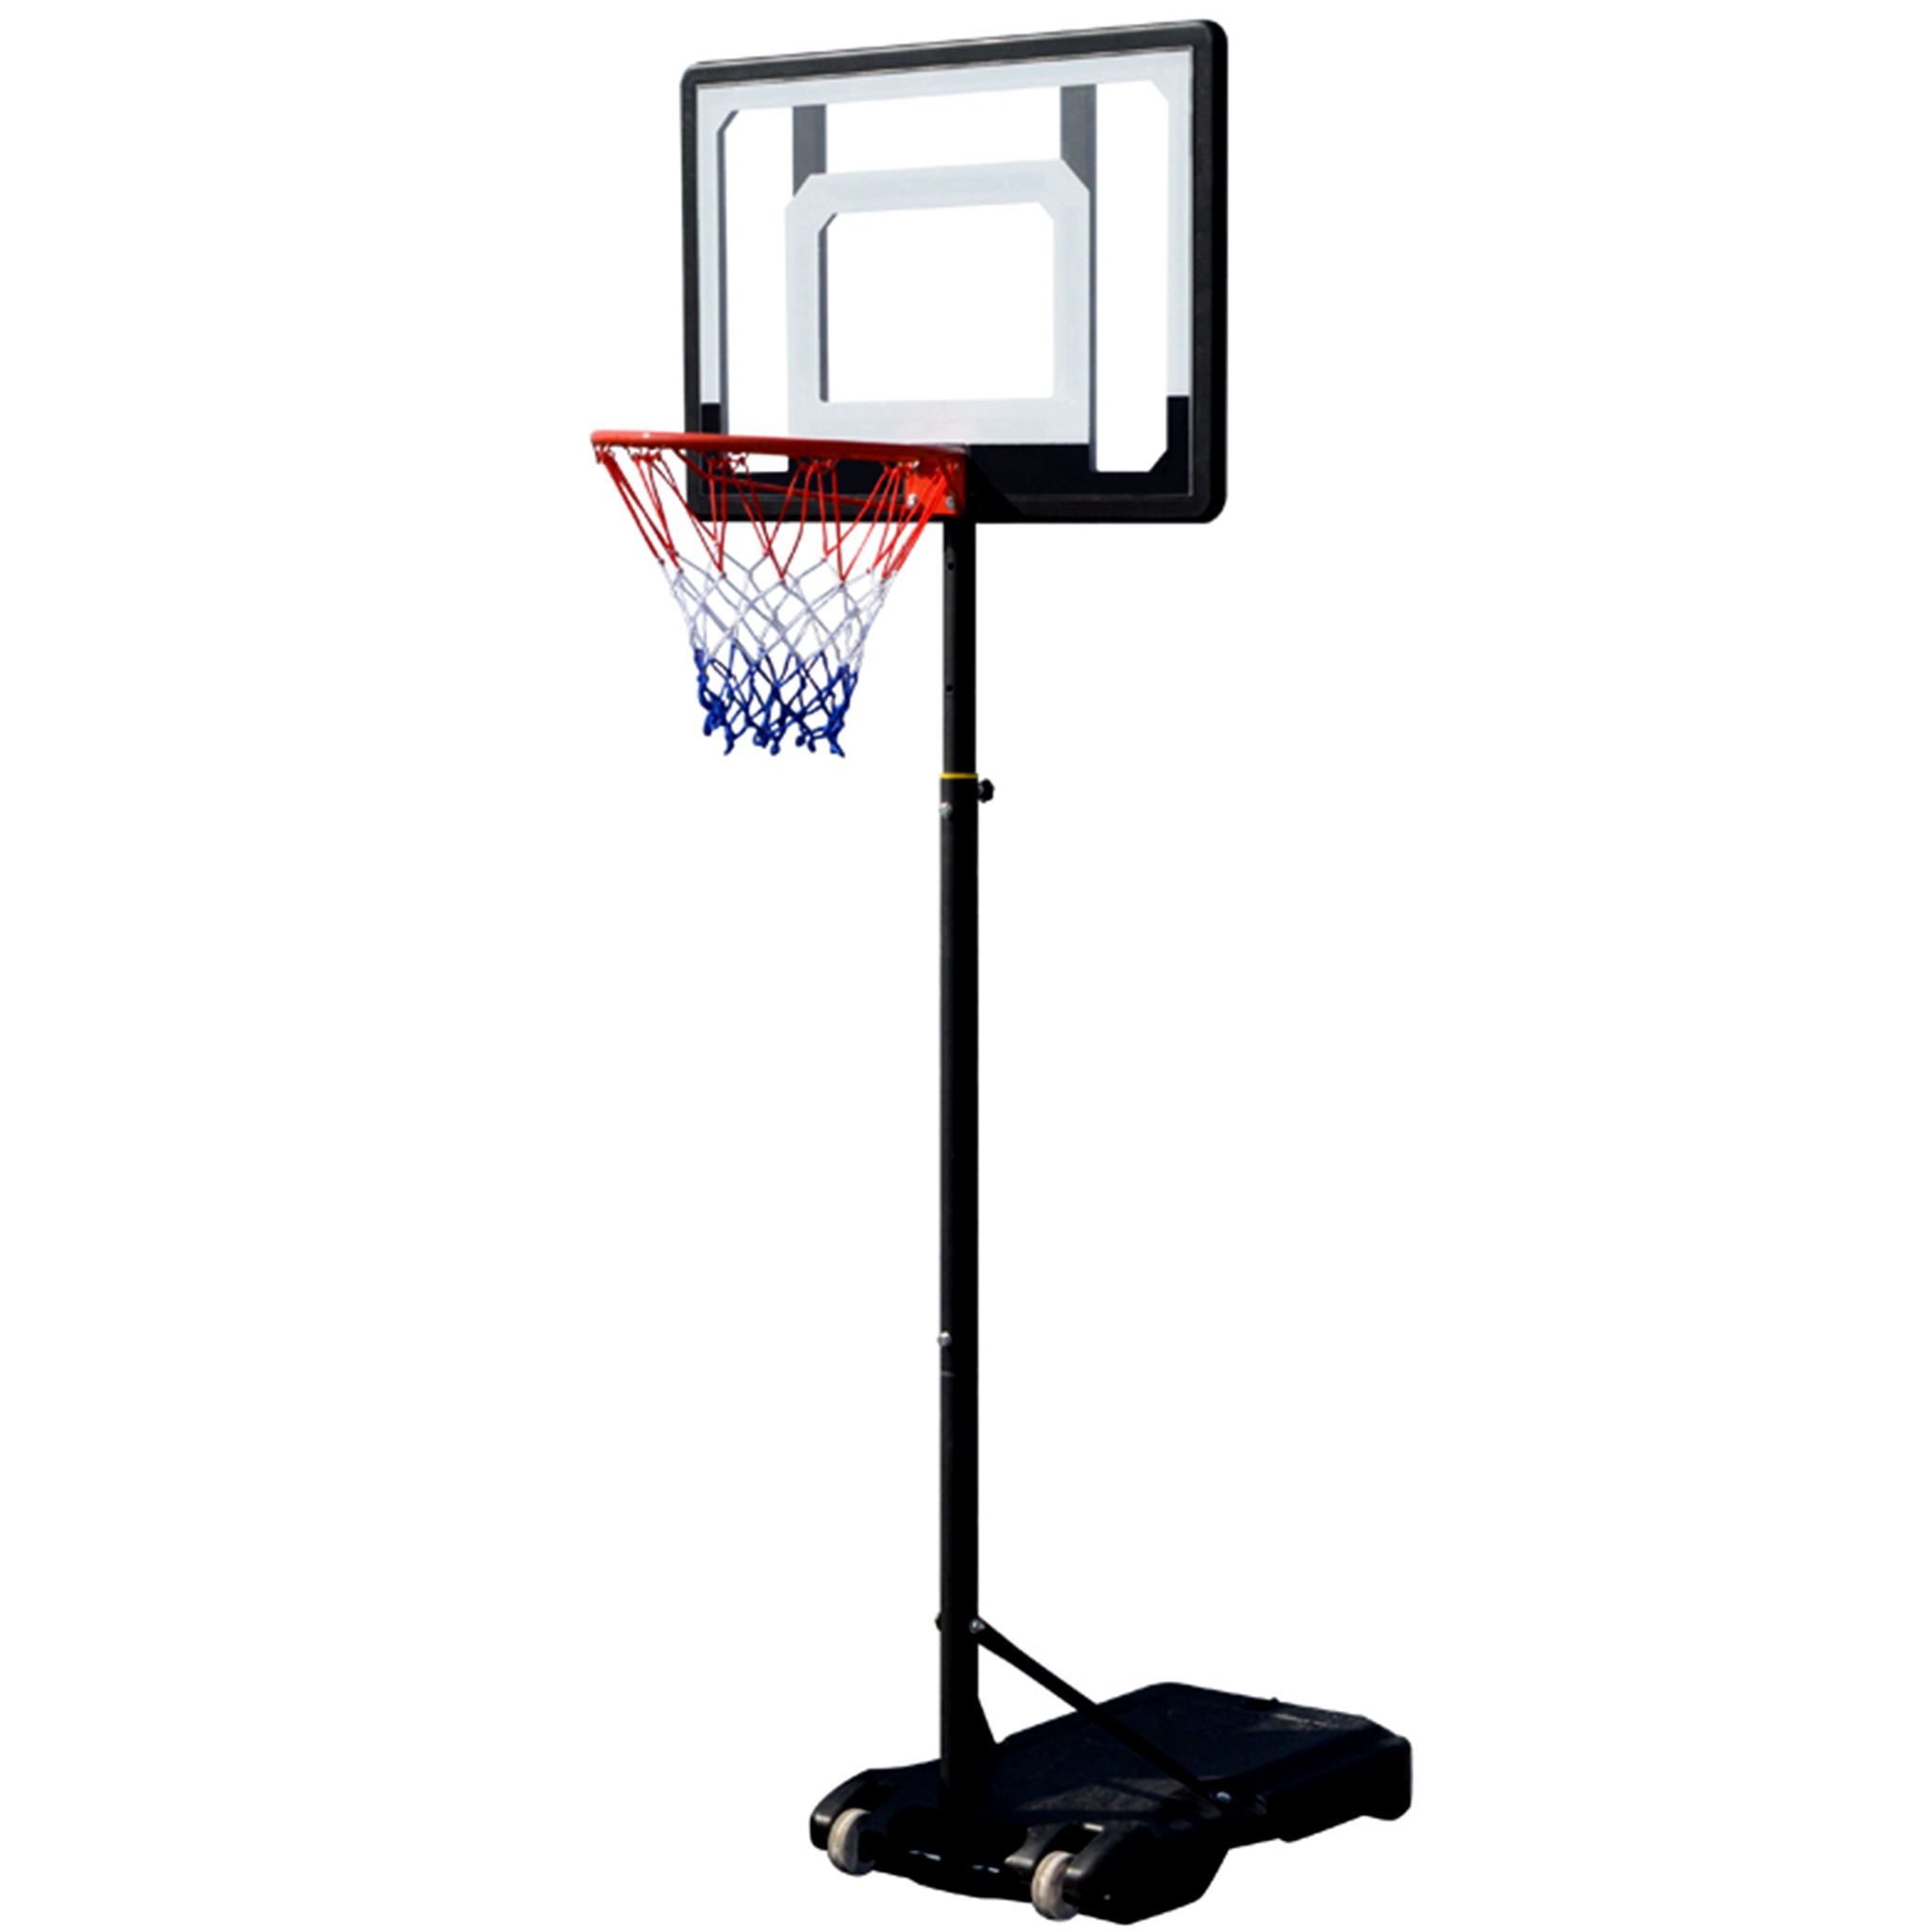 Basketkorg med ställning | Alley-Oop